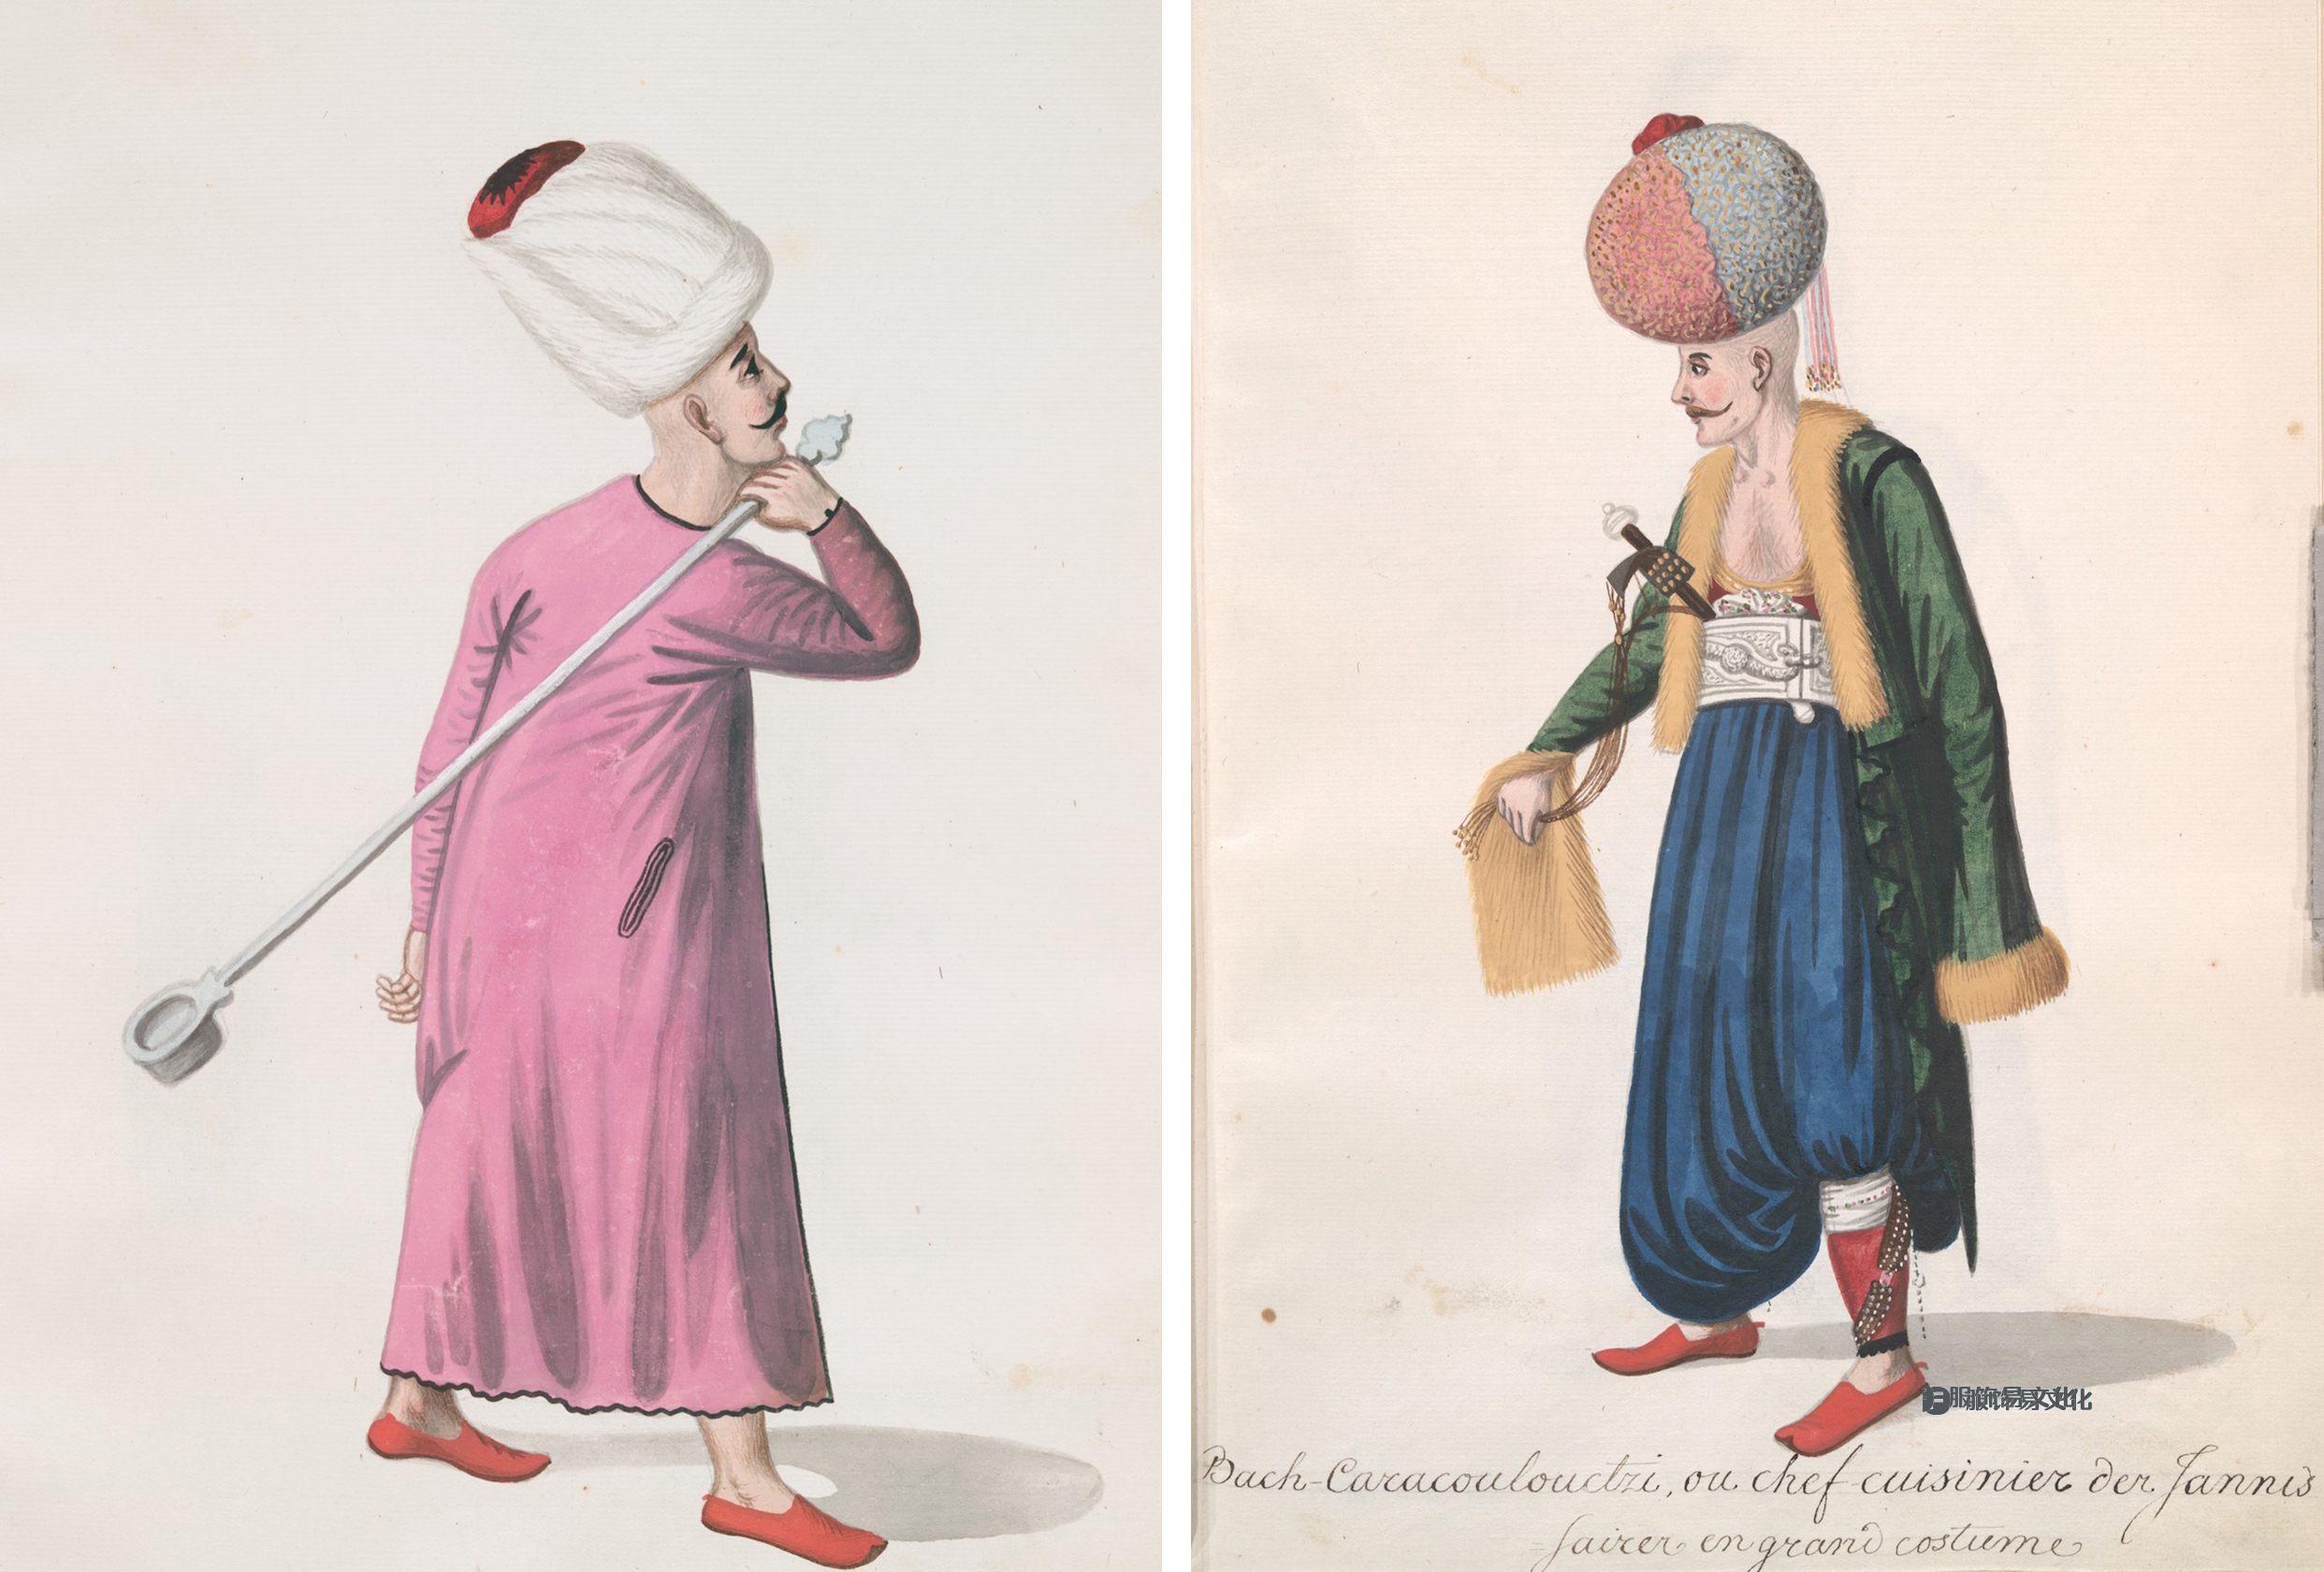 拿着大勺子的基层厨师和头戴精致头巾的主厨让人想起 16 世纪的风格。